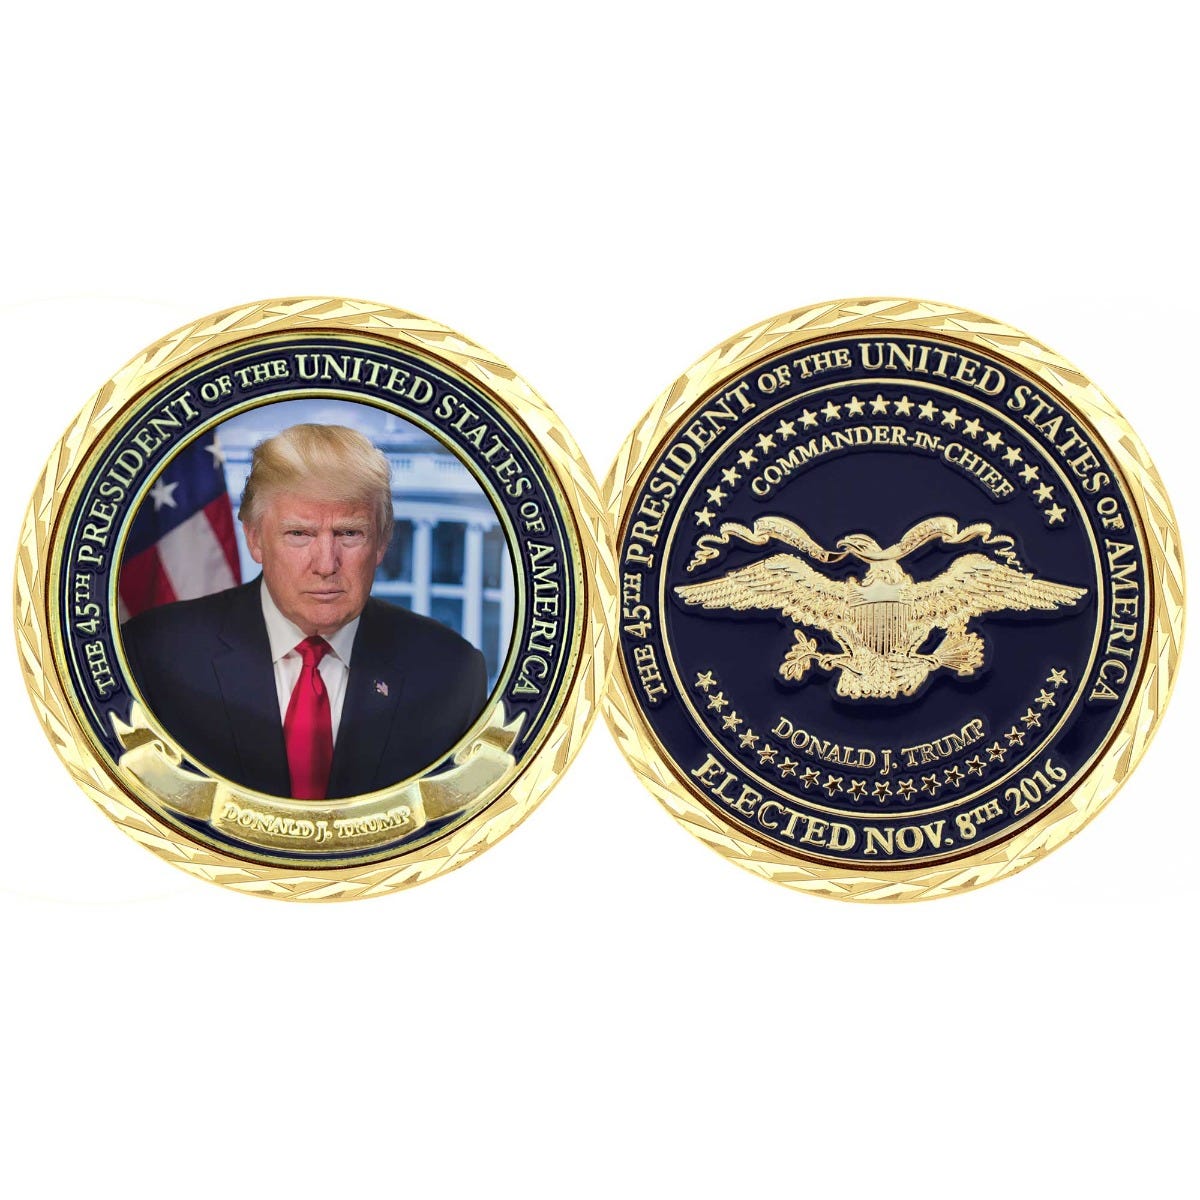 Itens de apoio às eleições personalizadas, tornando o presidente militar das moedas gravadas dos Estados Unidos moedas de desafio legal exclusivo